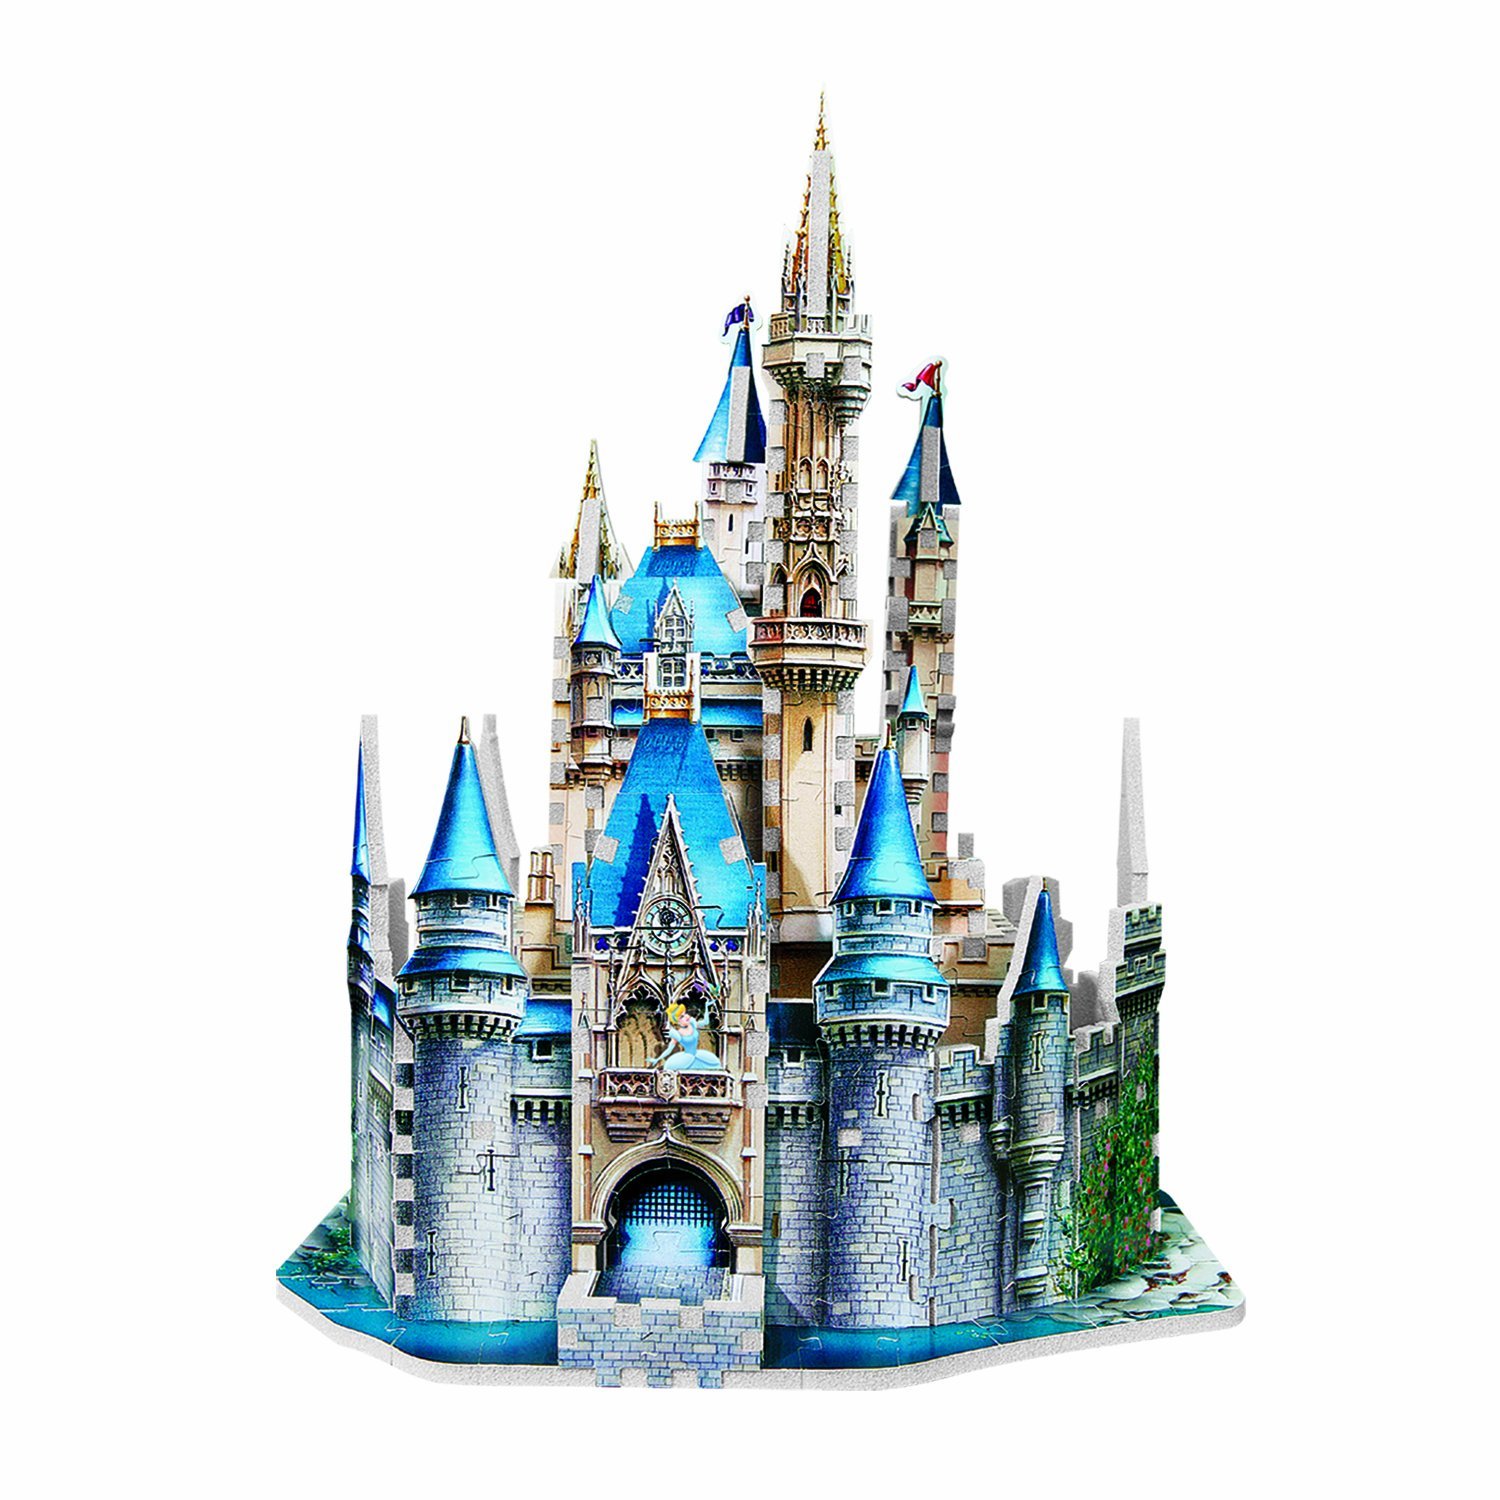 Disney Castle Outline Clipart 